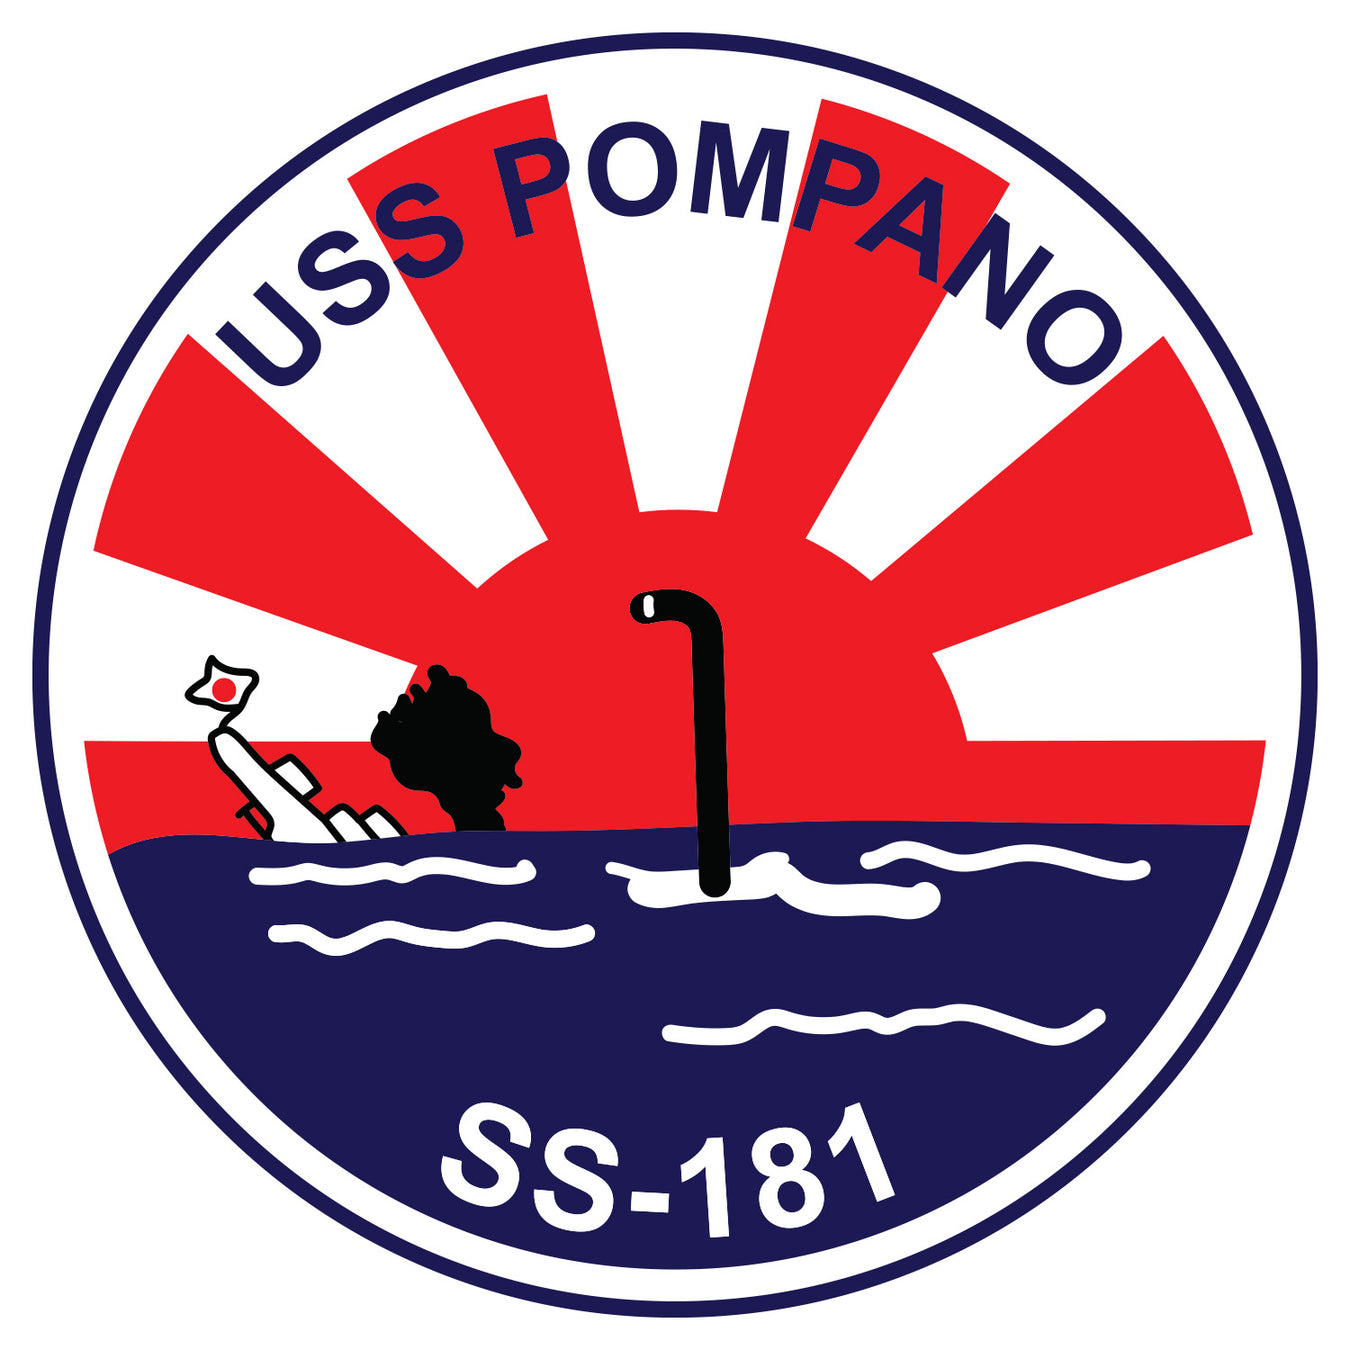 USS Pompano (SS-181)